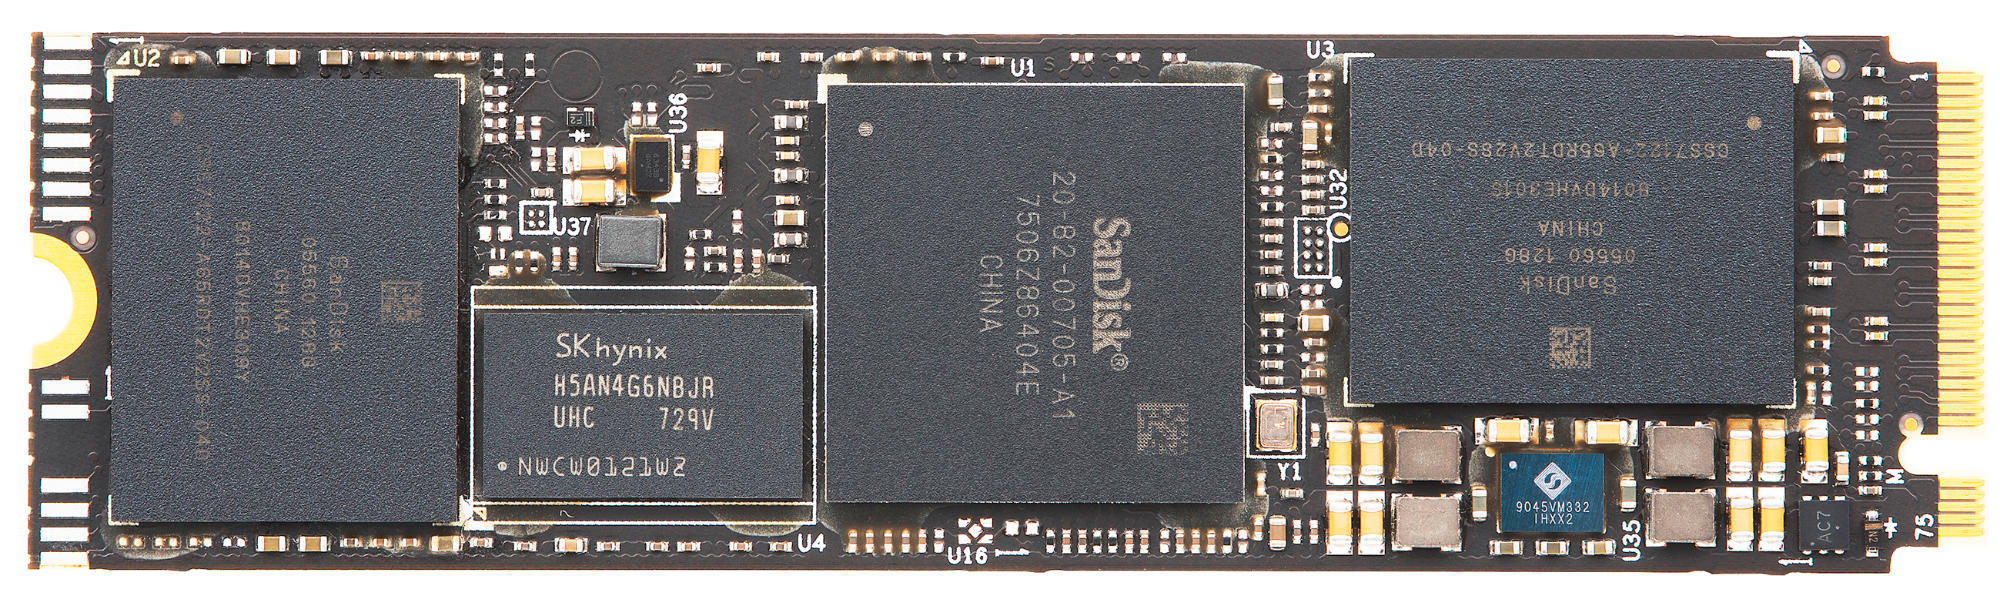 M.2, PRO® SSD Extreme 500 GB SANDISK Speicher, intern